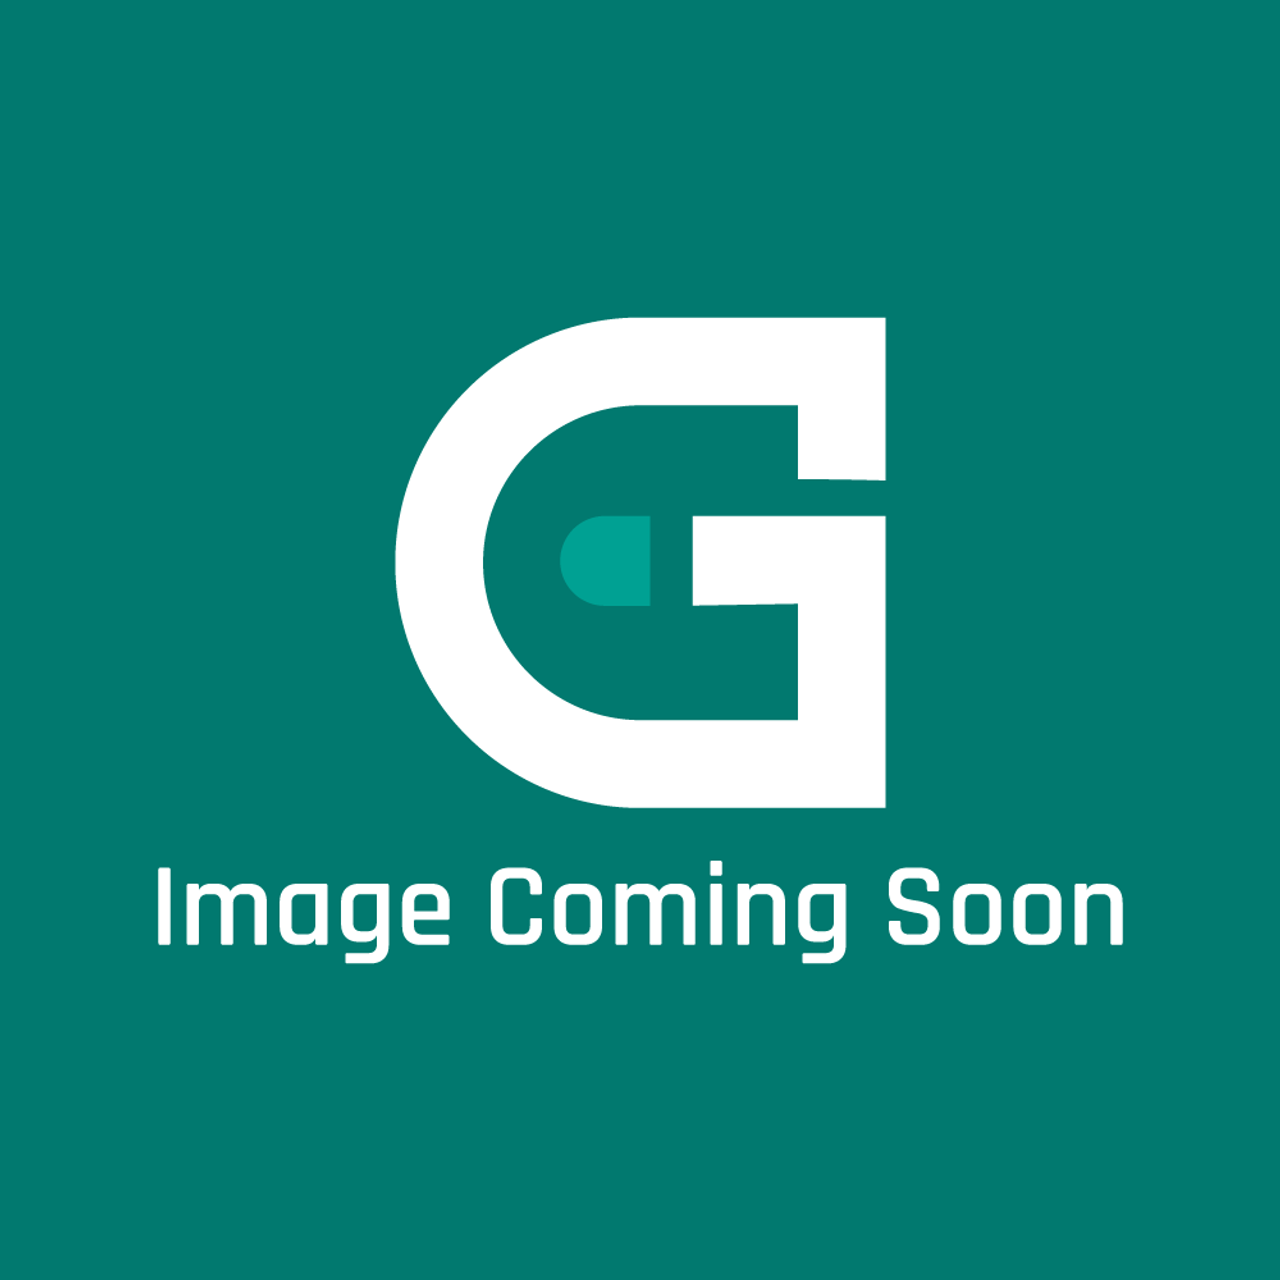 GE Appliances 16L39 - 104849-08 Repair Motor (1/2Hp 1047 Rpm) - Image Coming Soon!